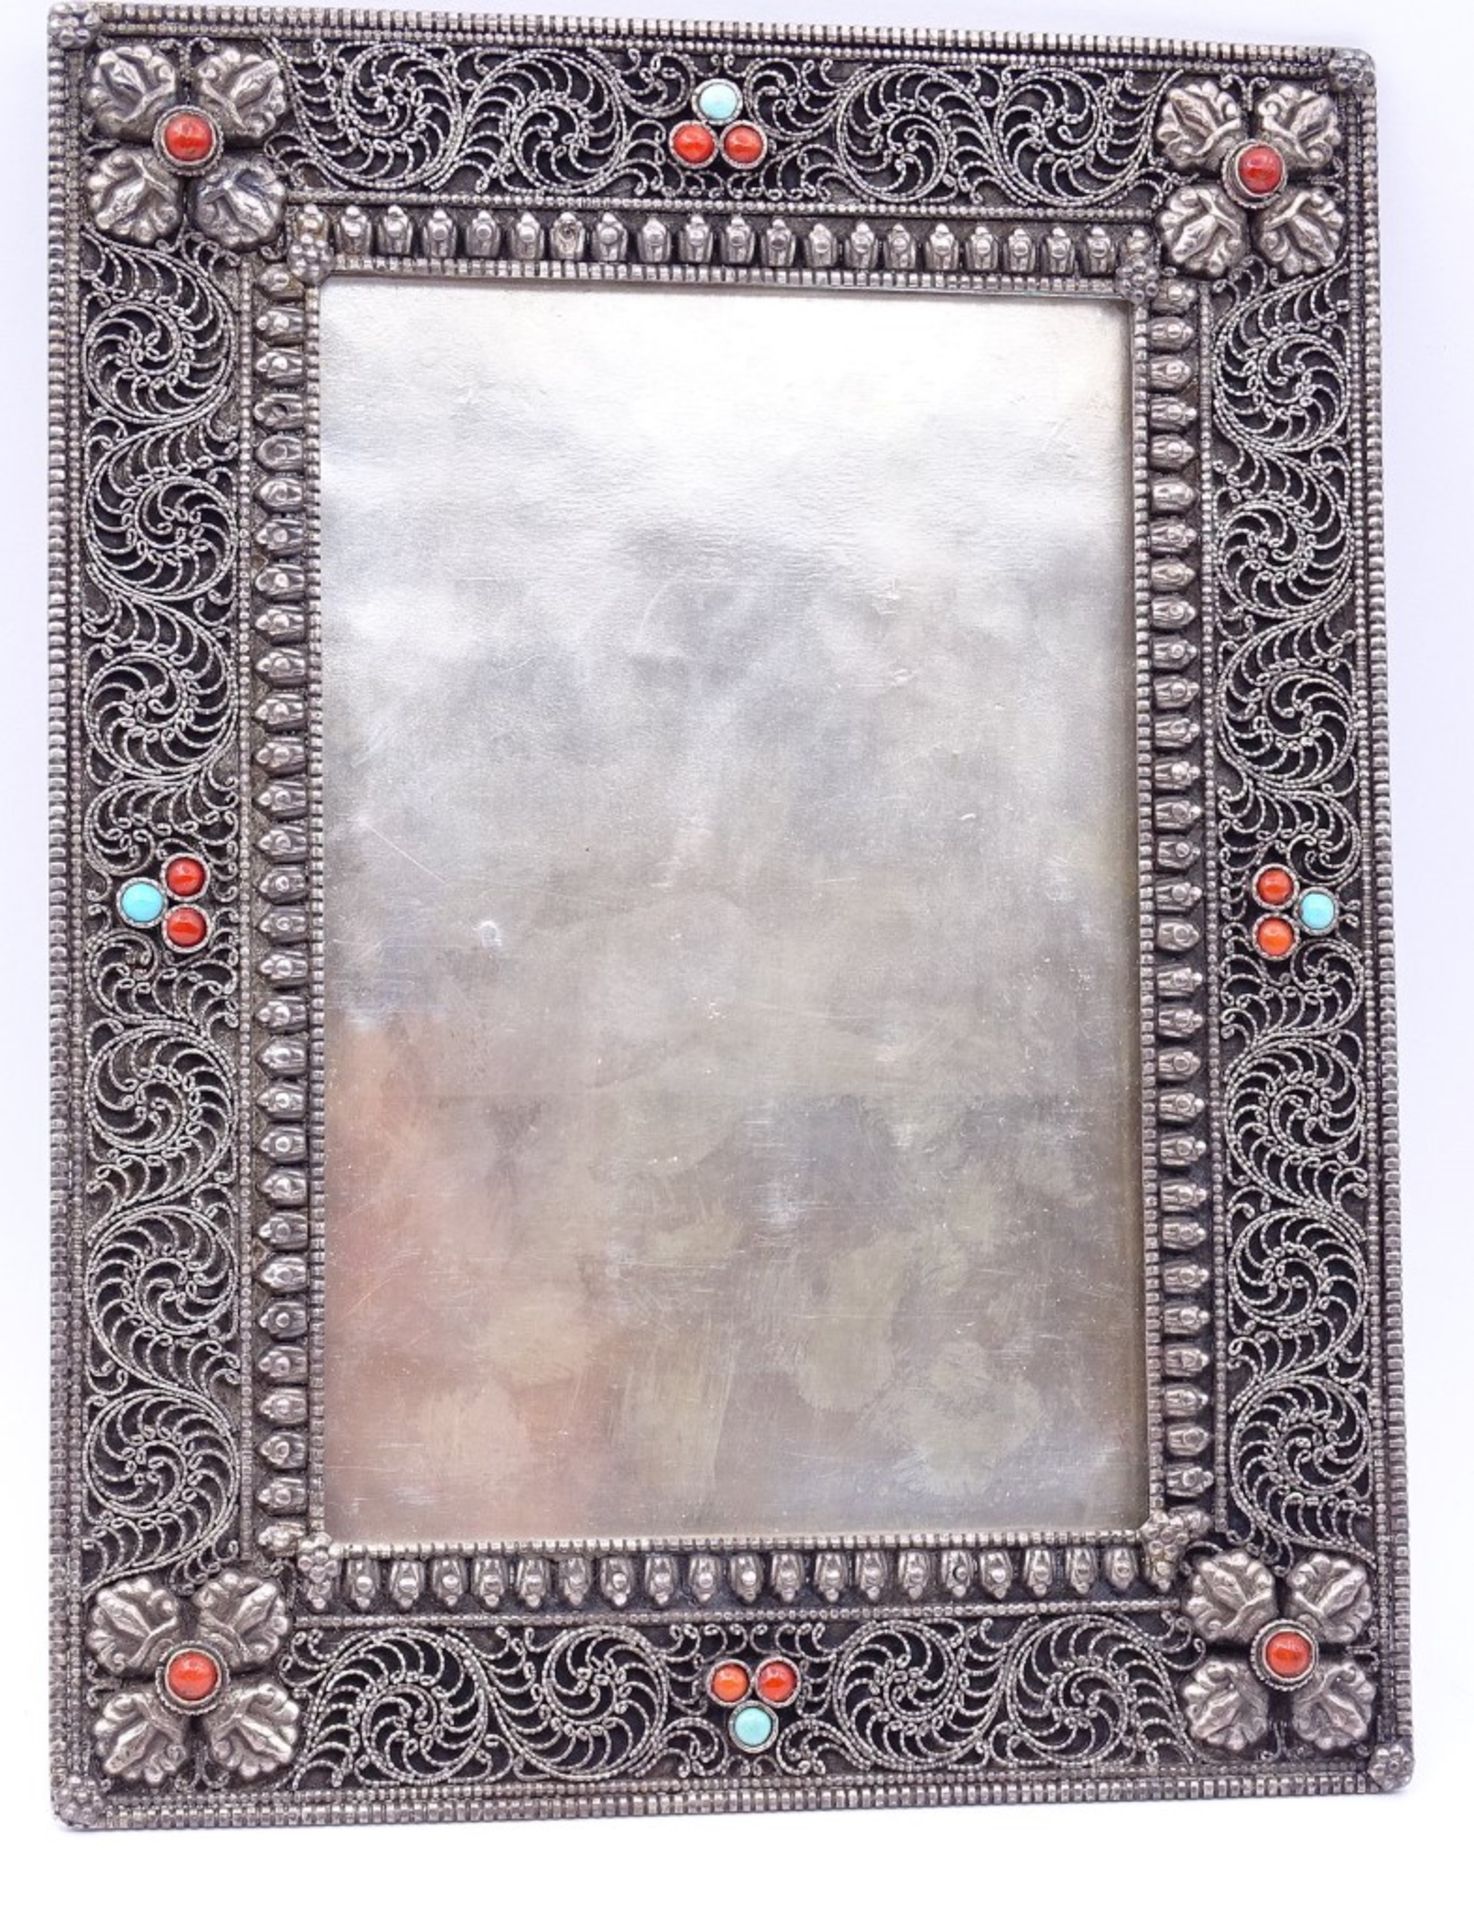 Tischfoto Rahmen in Sterling Silber mit Koralle und türkise,17,5x13,5cm,mit Glaseinsatz,Gew.